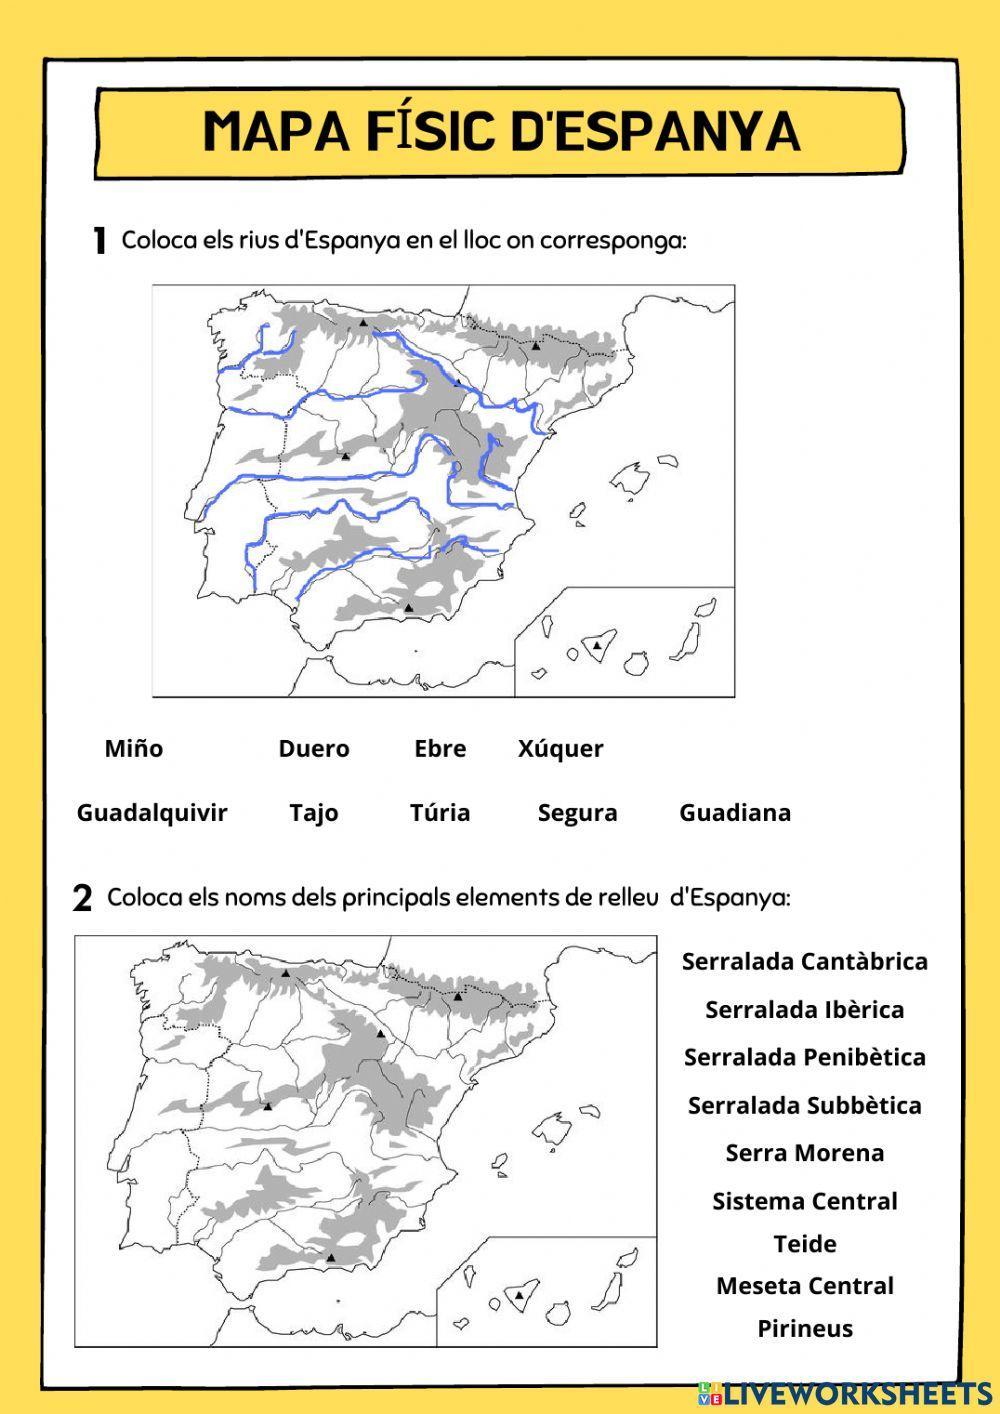 Mapa físic d'espanya